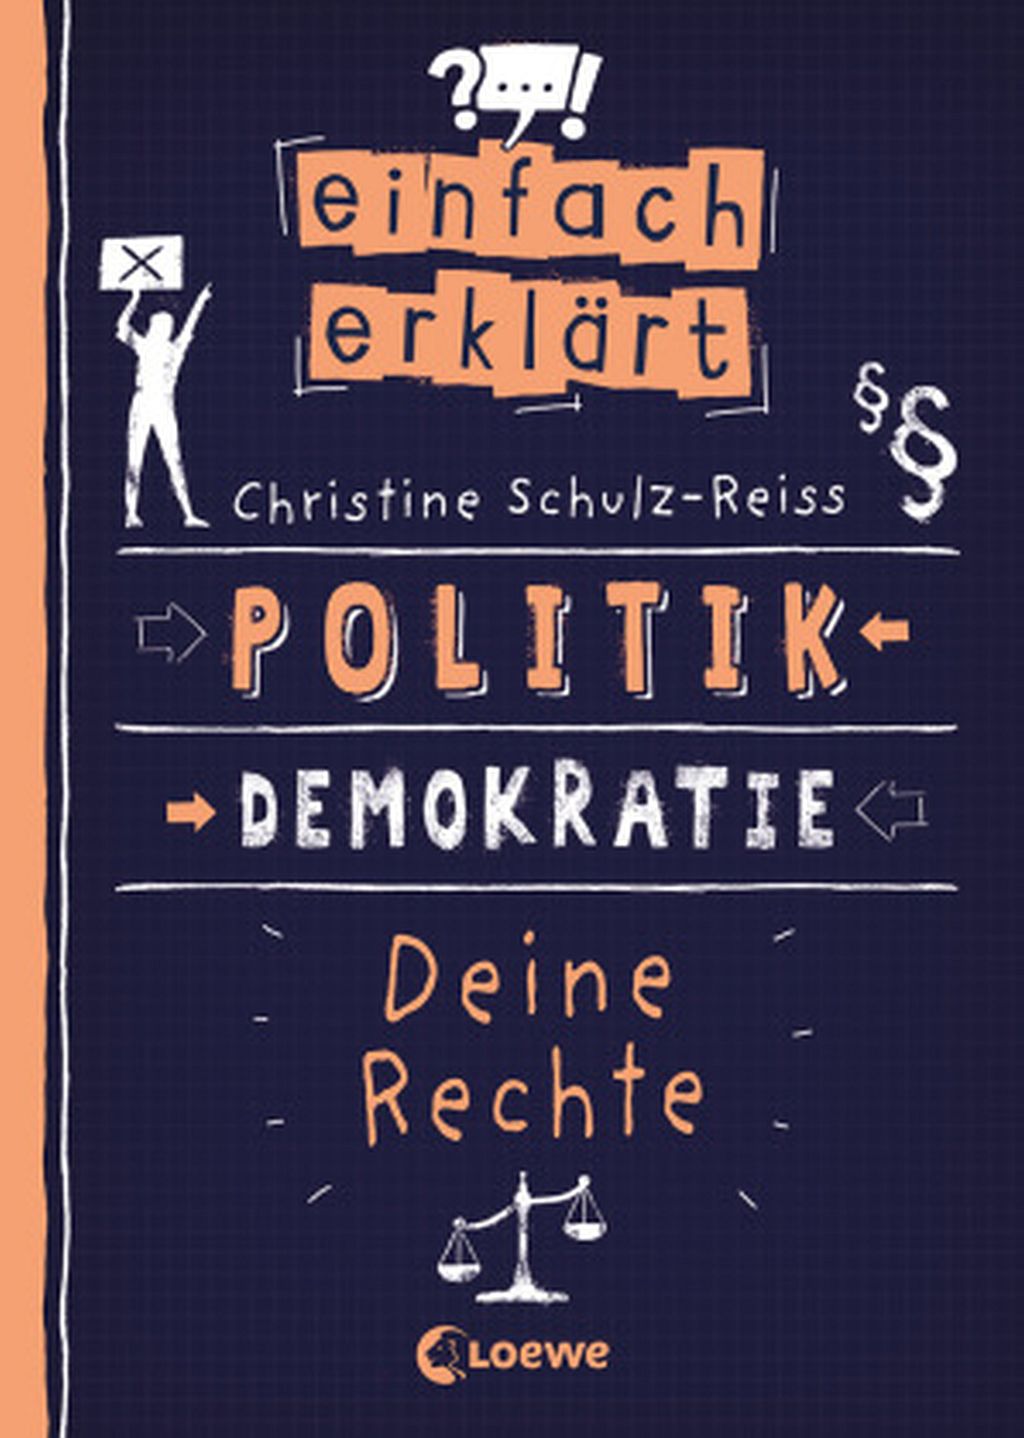 Einfach erklärt - Politik - Demokratie - Deine Rechte (c) Loewe-Verlag